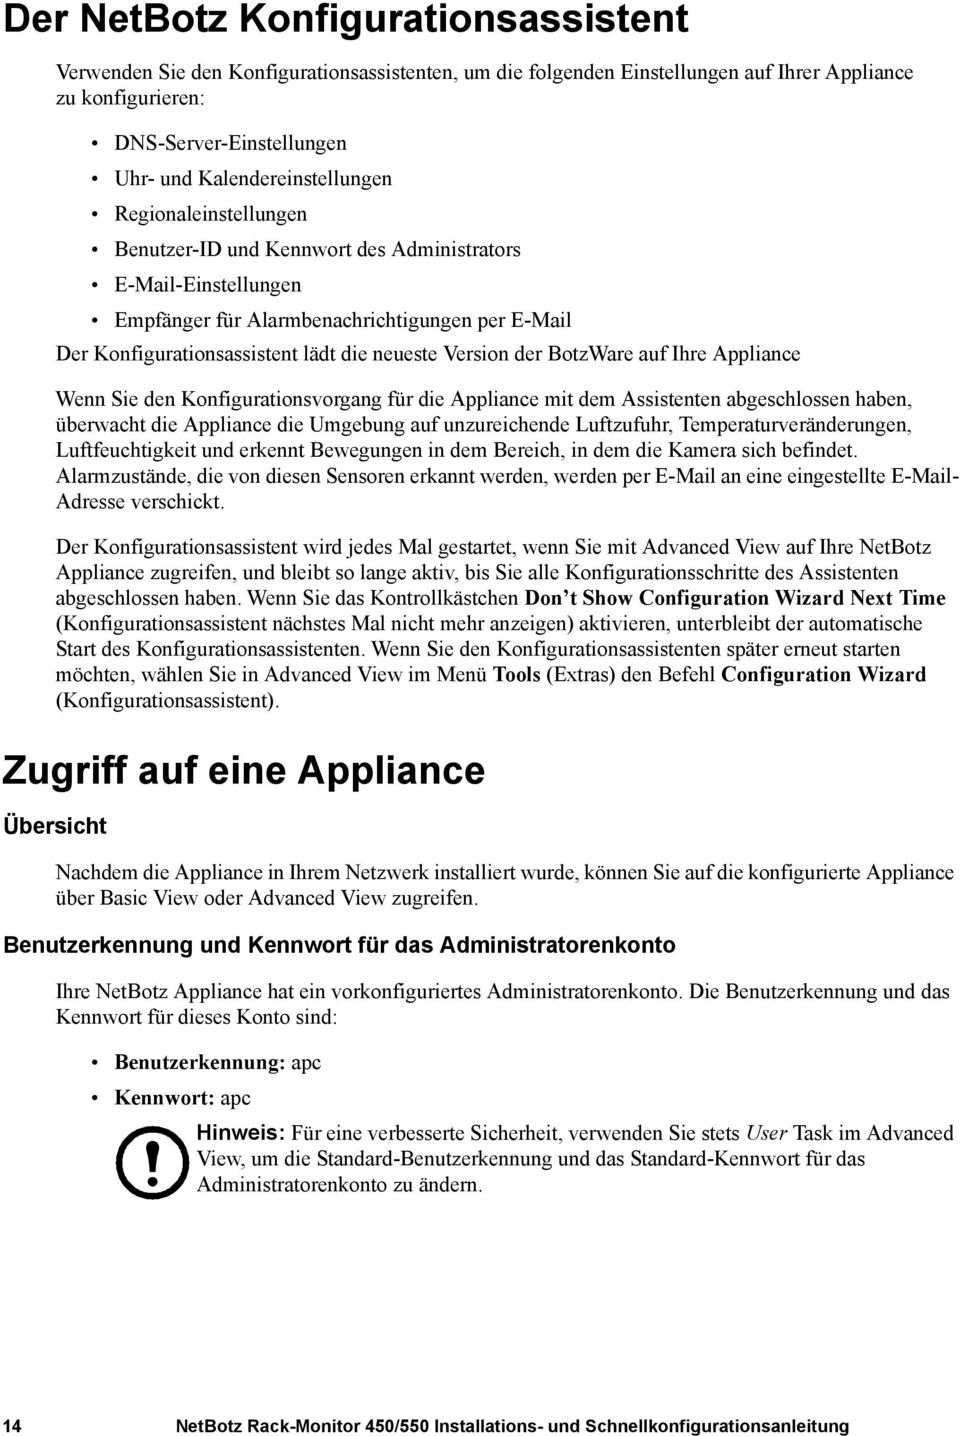 neueste Version der BotzWare auf Ihre Appliance Wenn Sie den Konfigurationsvorgang für die Appliance mit dem Assistenten abgeschlossen haben, überwacht die Appliance die Umgebung auf unzureichende